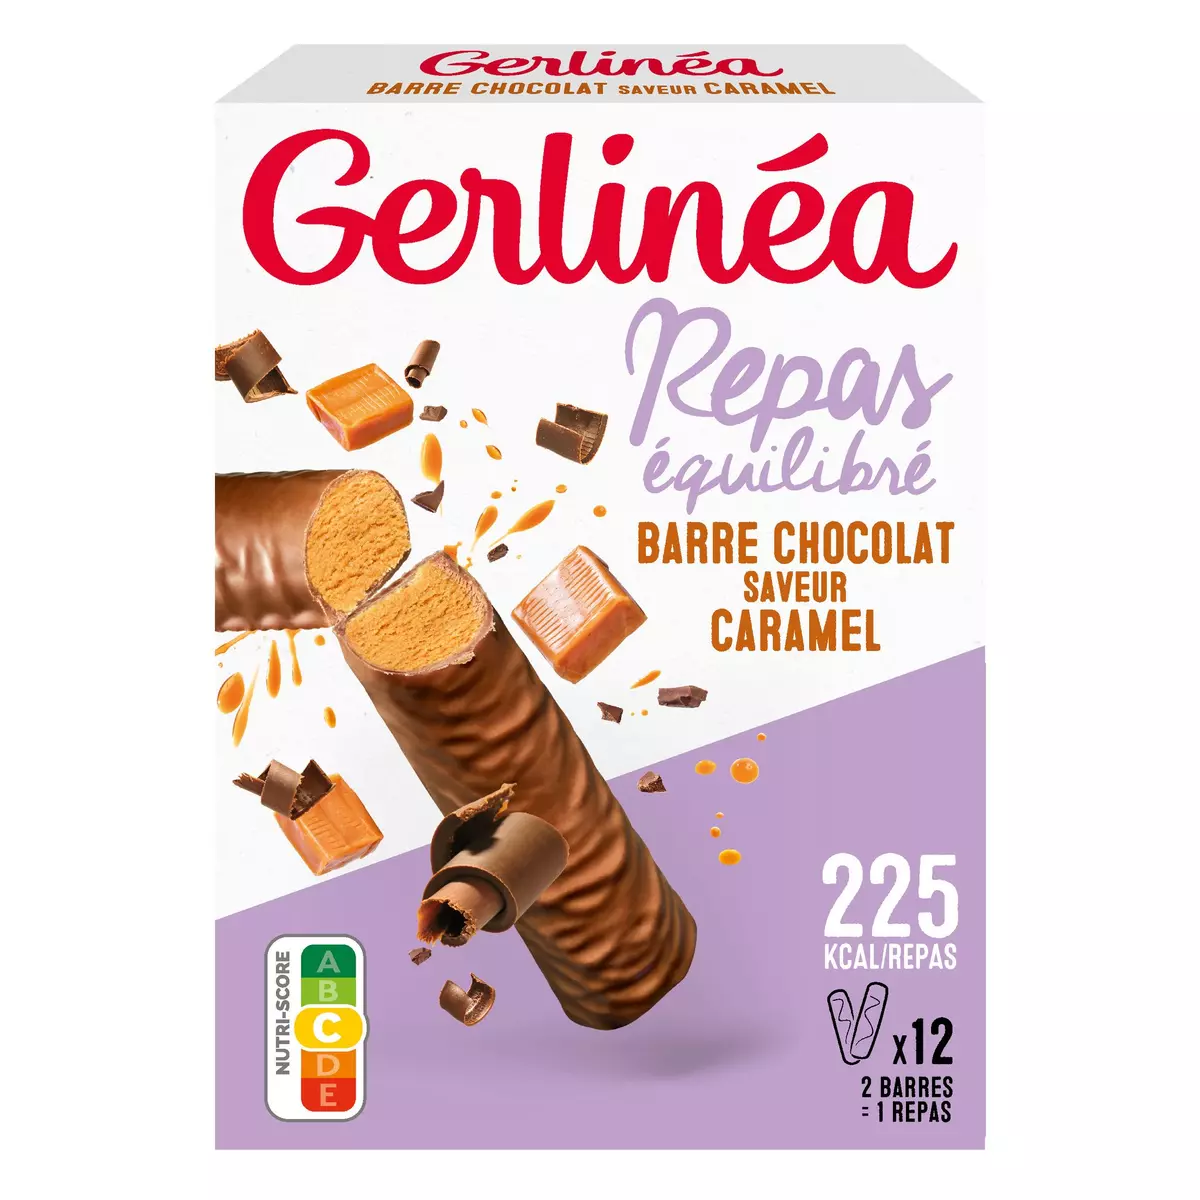 GERLINEA Repas minceur saveur chocolat caramel riche en protéines